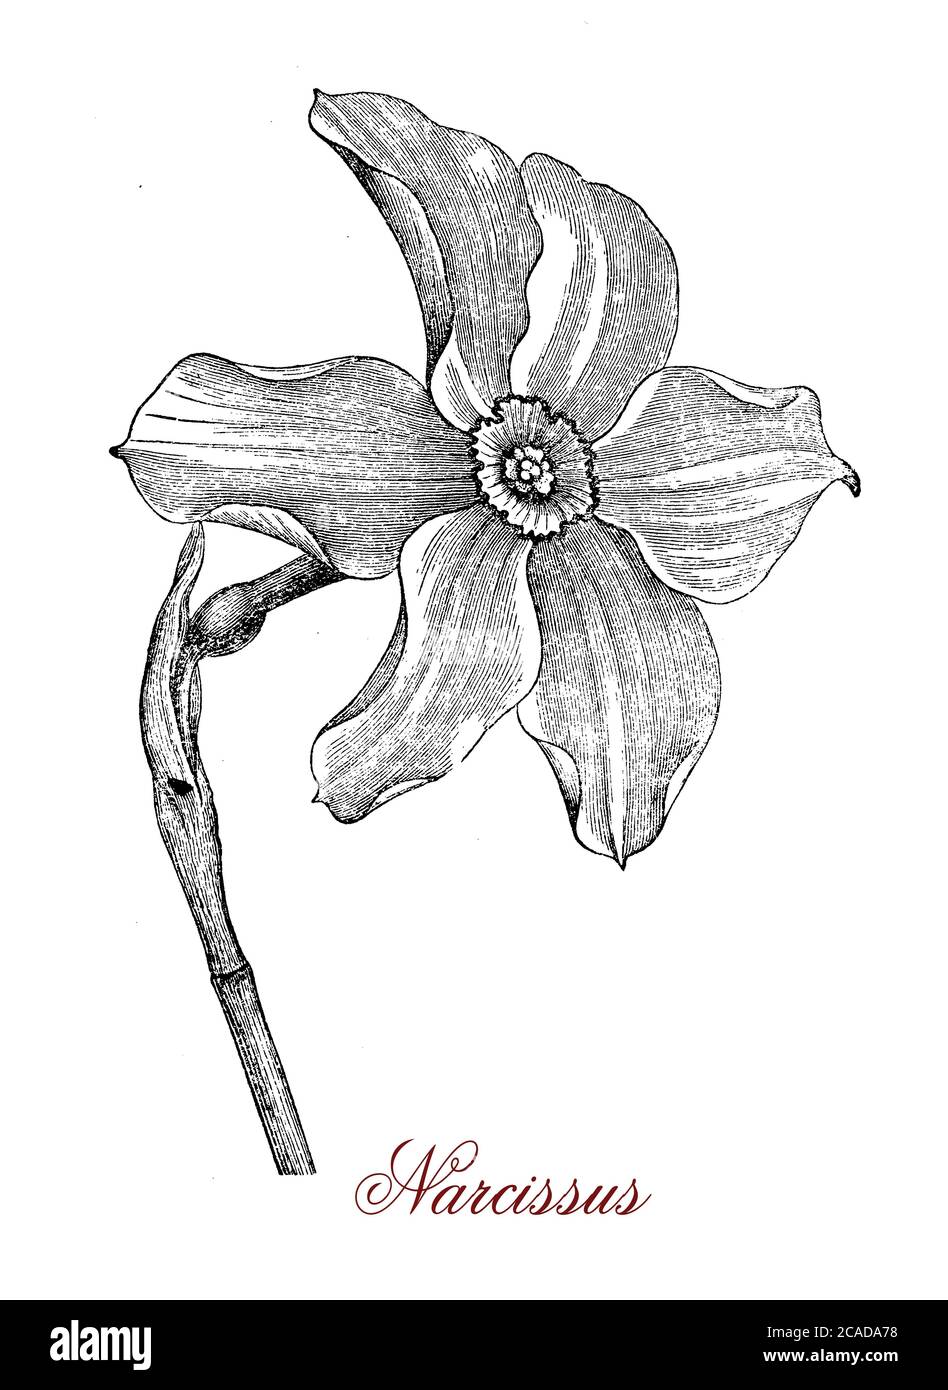 Narcissus Blume, der allgemeine Name Narzissus oder jonquil, von Narzissus blühende mehrjährige Pflanze, ist eine auffällige Blume mit sechs Blütenblatt-ähnlichen Tepals, die von einer trompetenförmigen Korona in der Regel weiß oder gelb überragt. Stockfoto